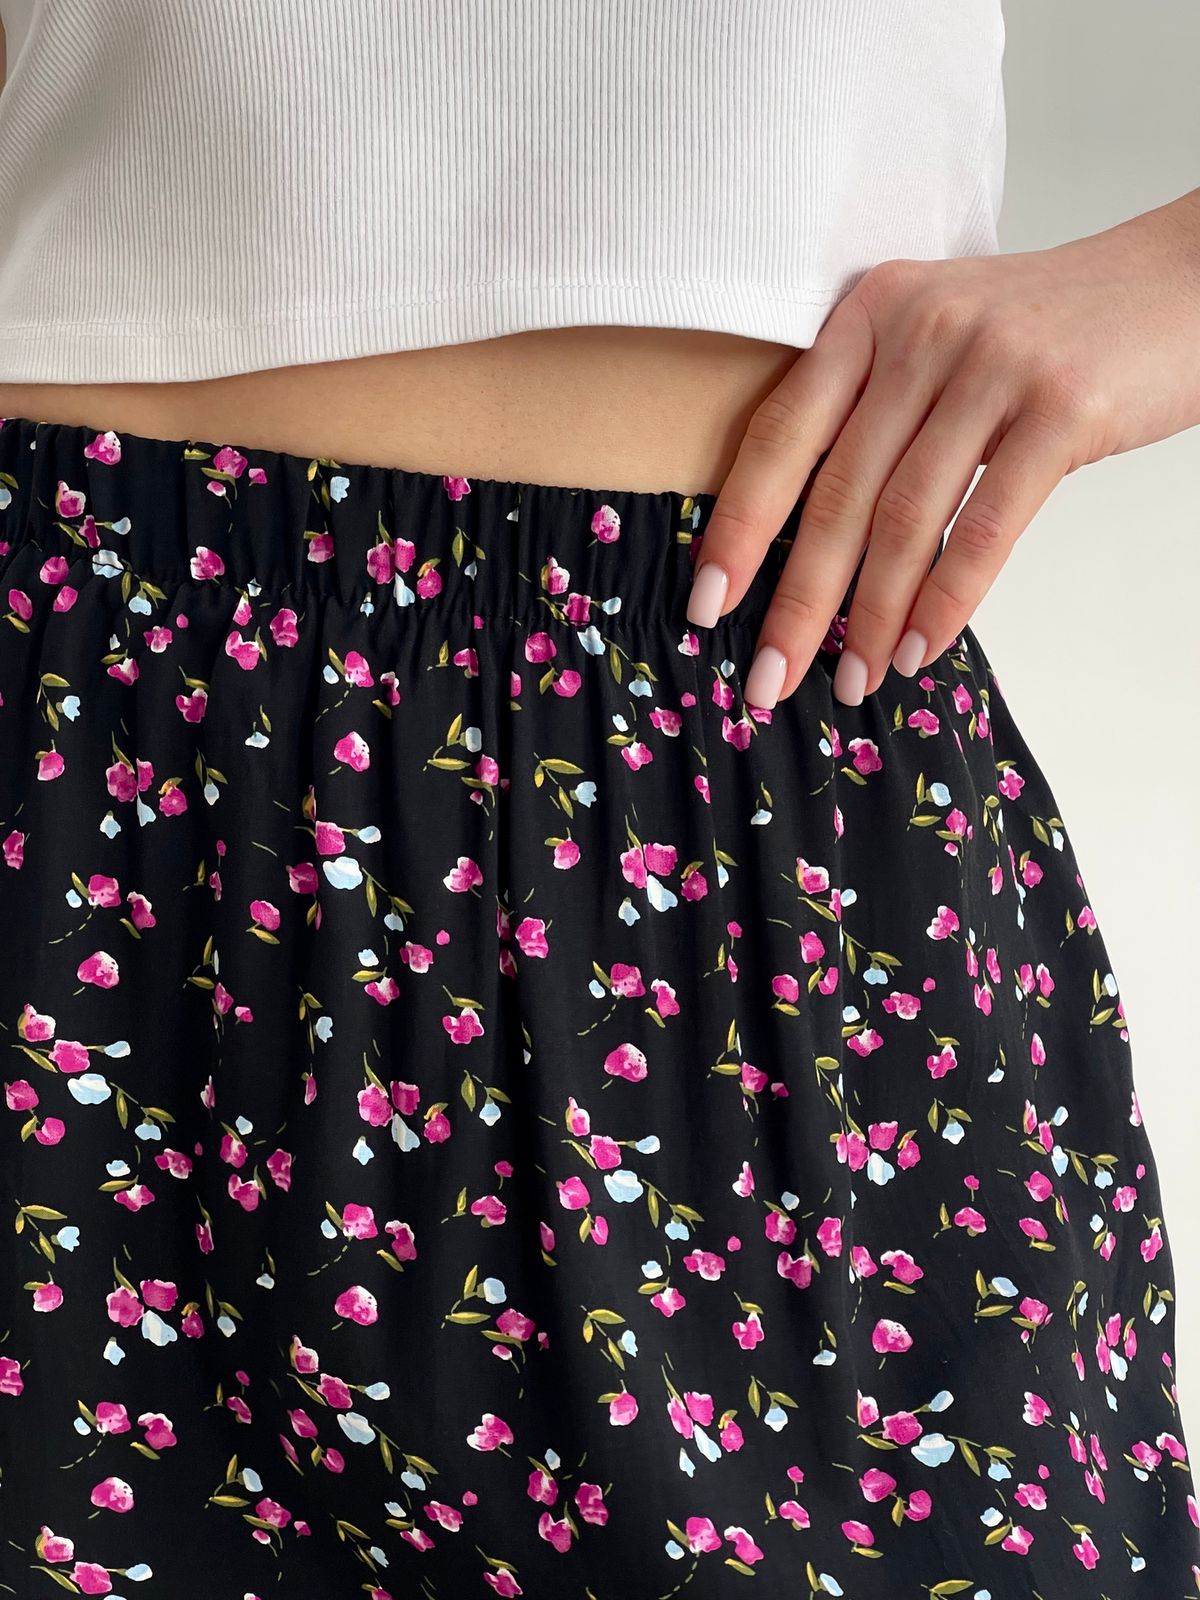 Купить Длинная женская юбка с разрезом в цветочек черная Merlini Лакко 400001261 размер 42-44 (S-M) в интернет-магазине